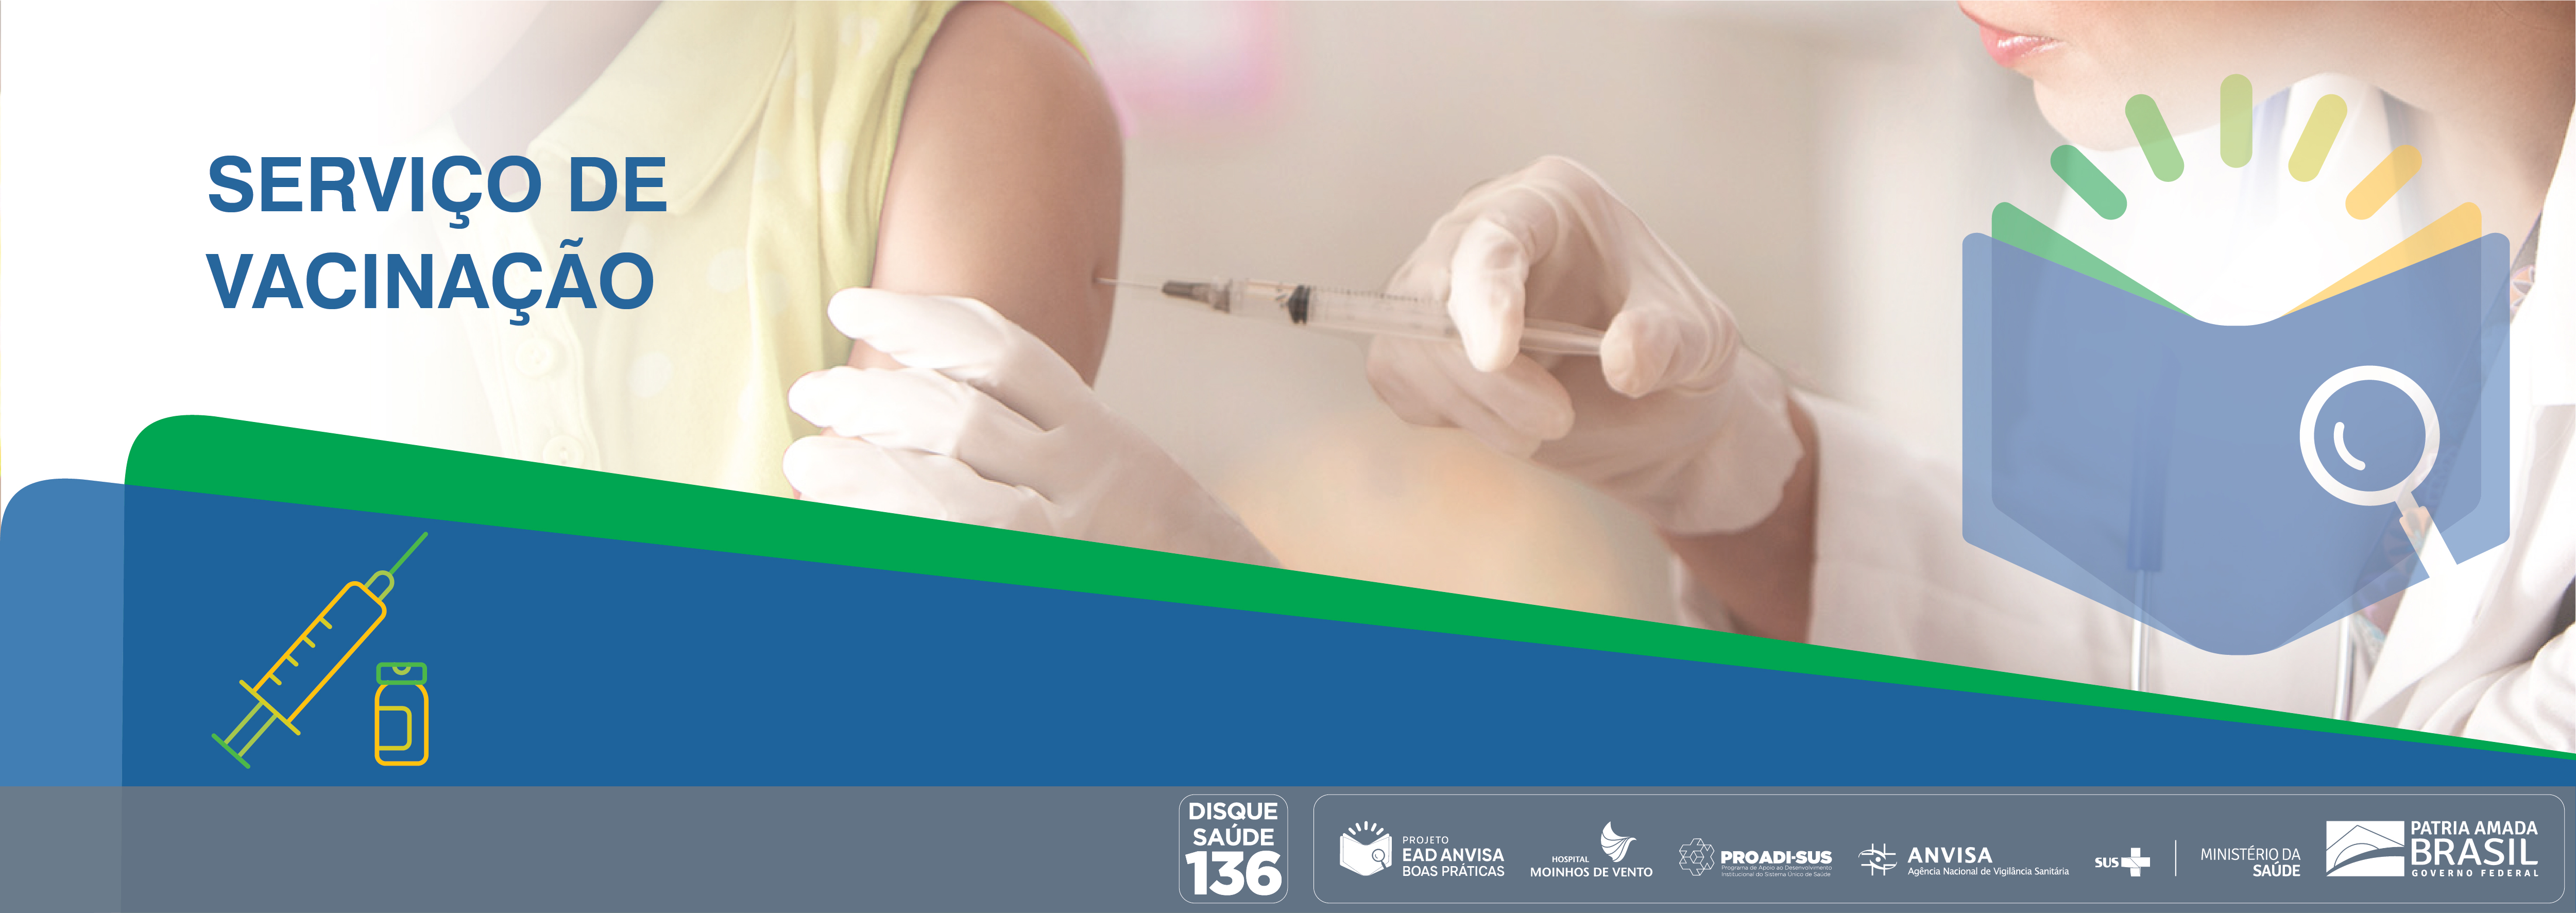 Boas Práticas em Serviços de Vacinação no Brasil ANVISA_2021_BPSVB_V2